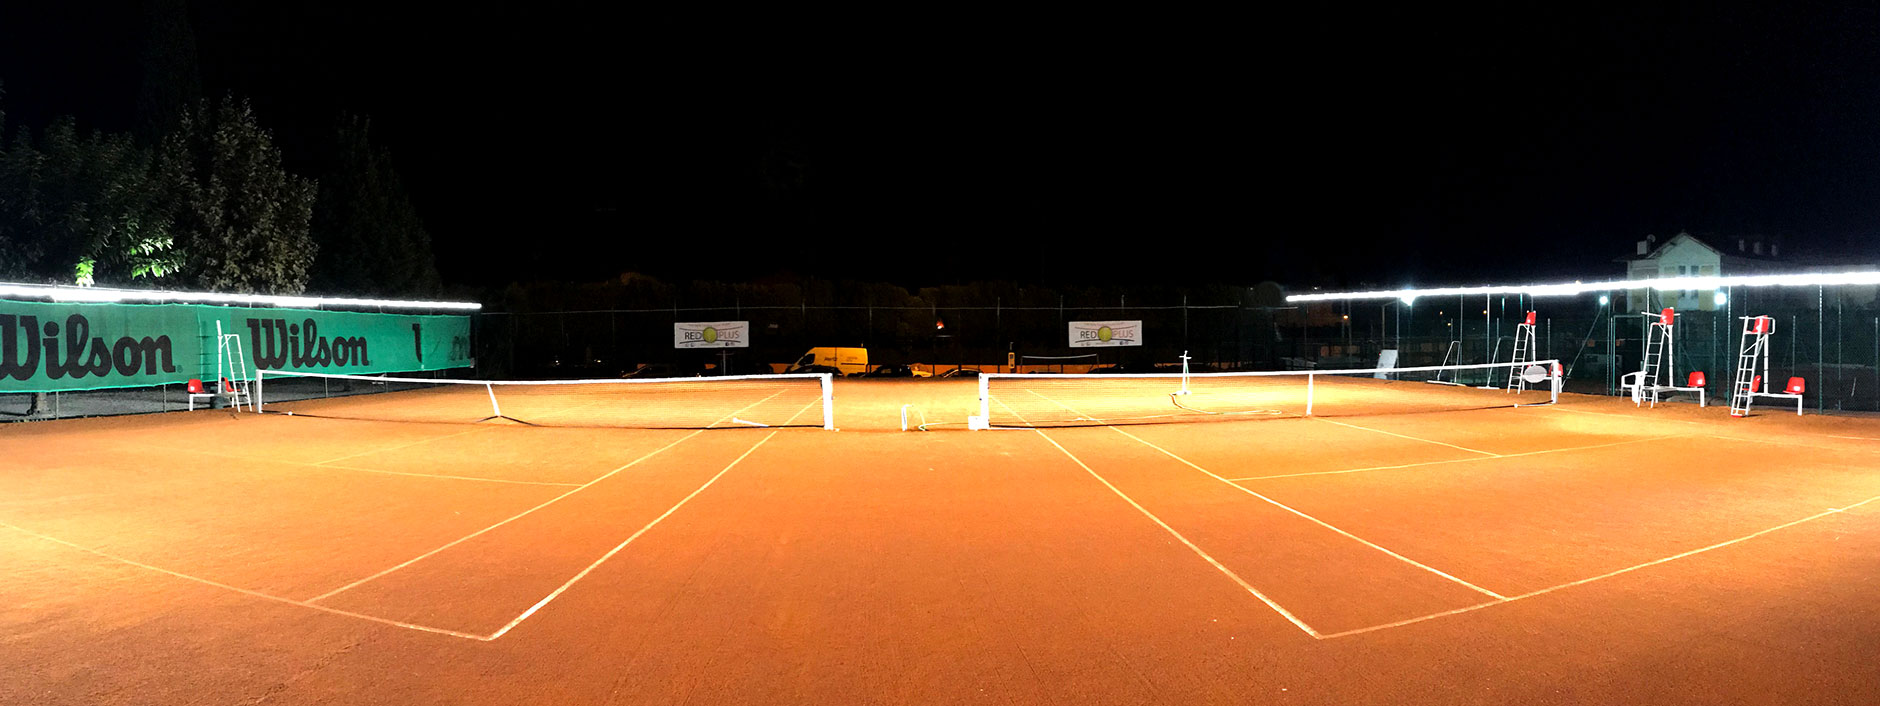 Courts de tennis éclairés par Tweener